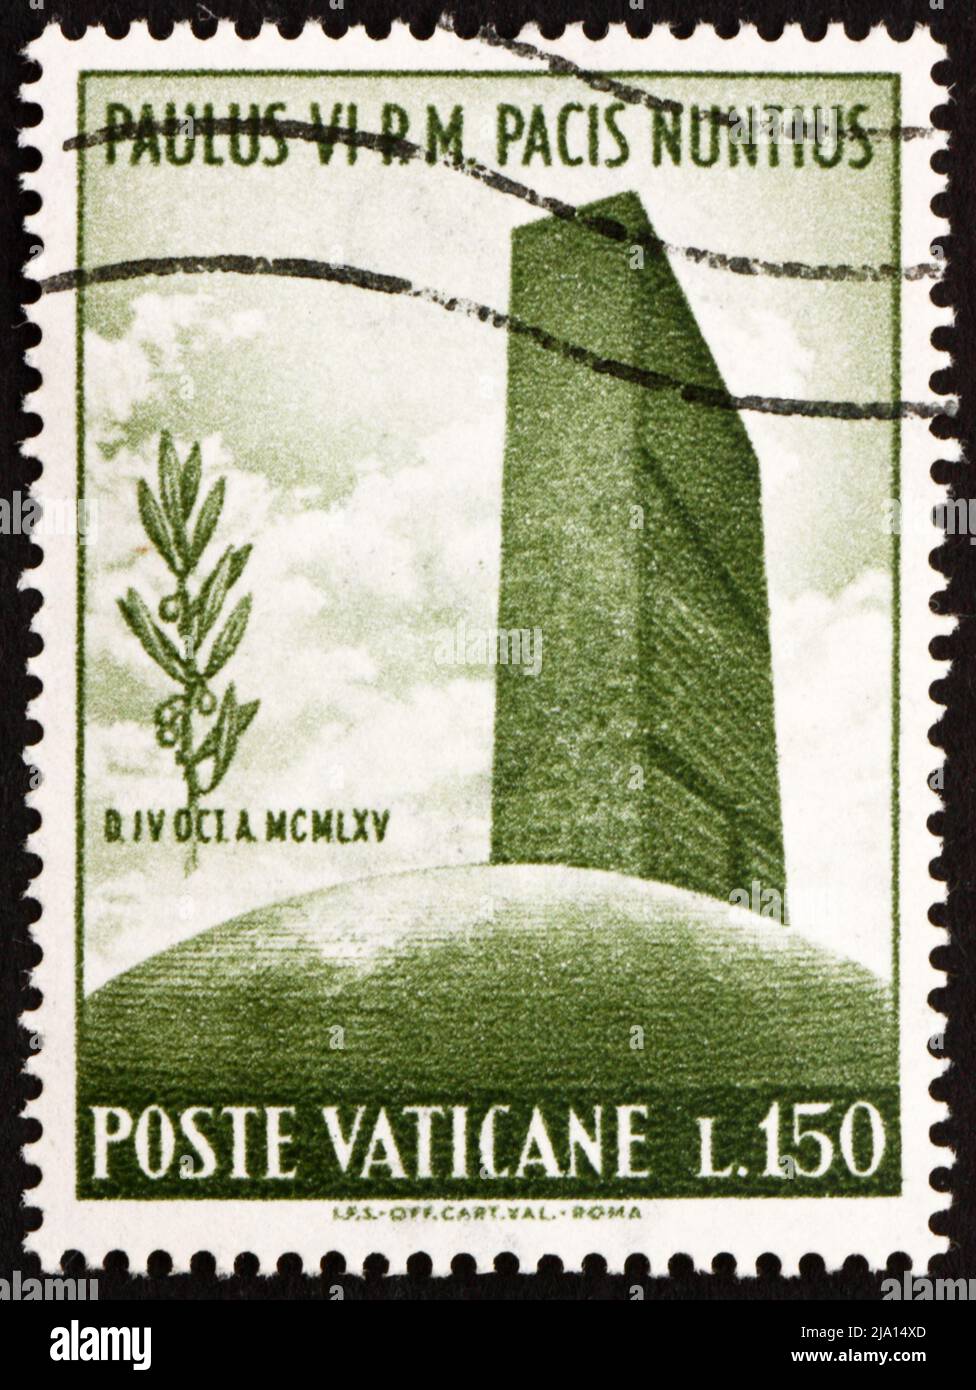 VATIKAN - UM 1965: Eine im Vatikan gedruckte Briefmarke zeigt das UN-Hauptquartier und die Olive Branch, um 1965 Stockfoto